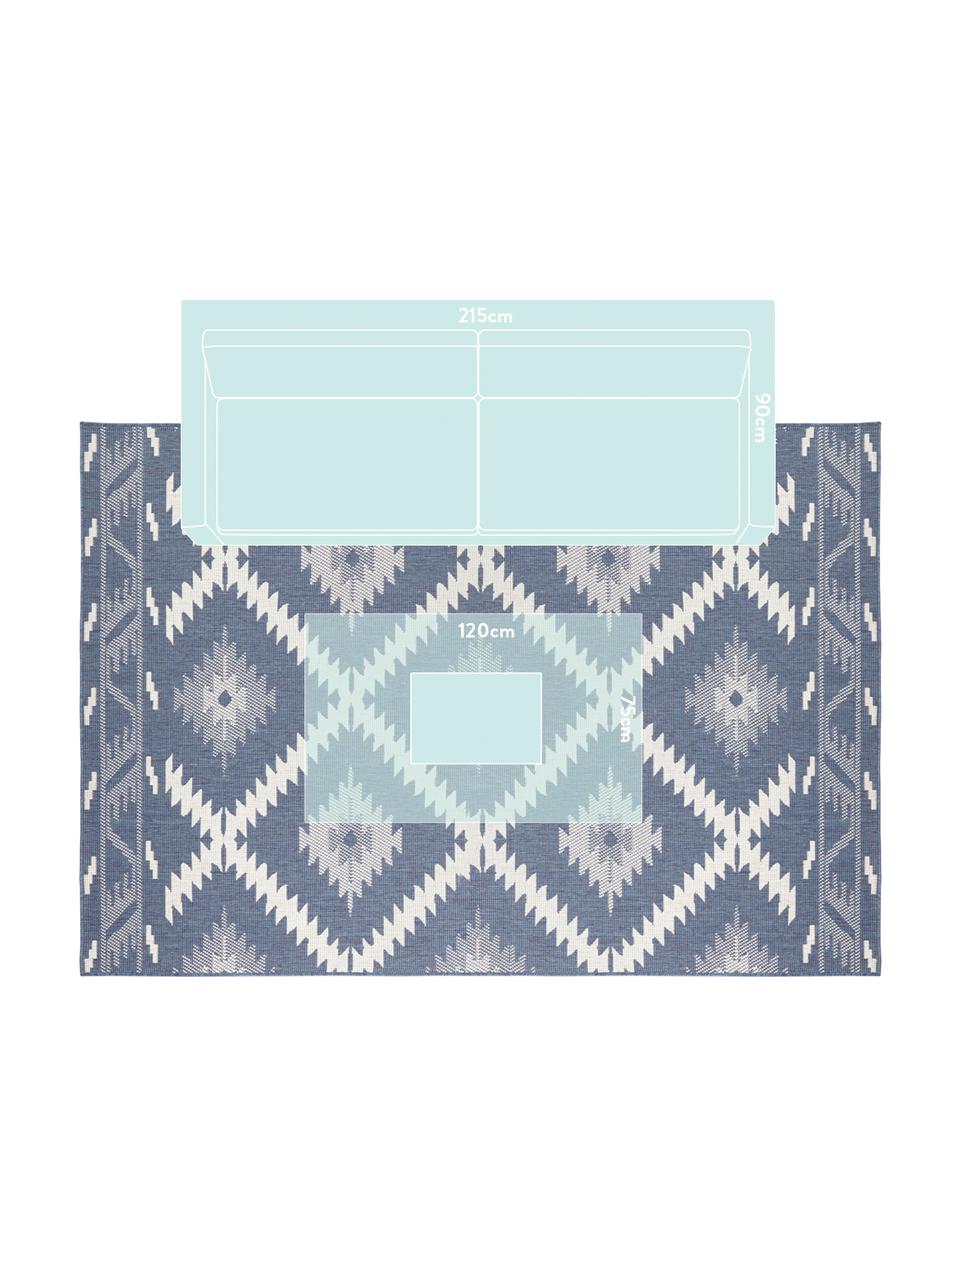 Obojstranný koberec do interiéru/exteriéru Malibu, Modrá, krémová